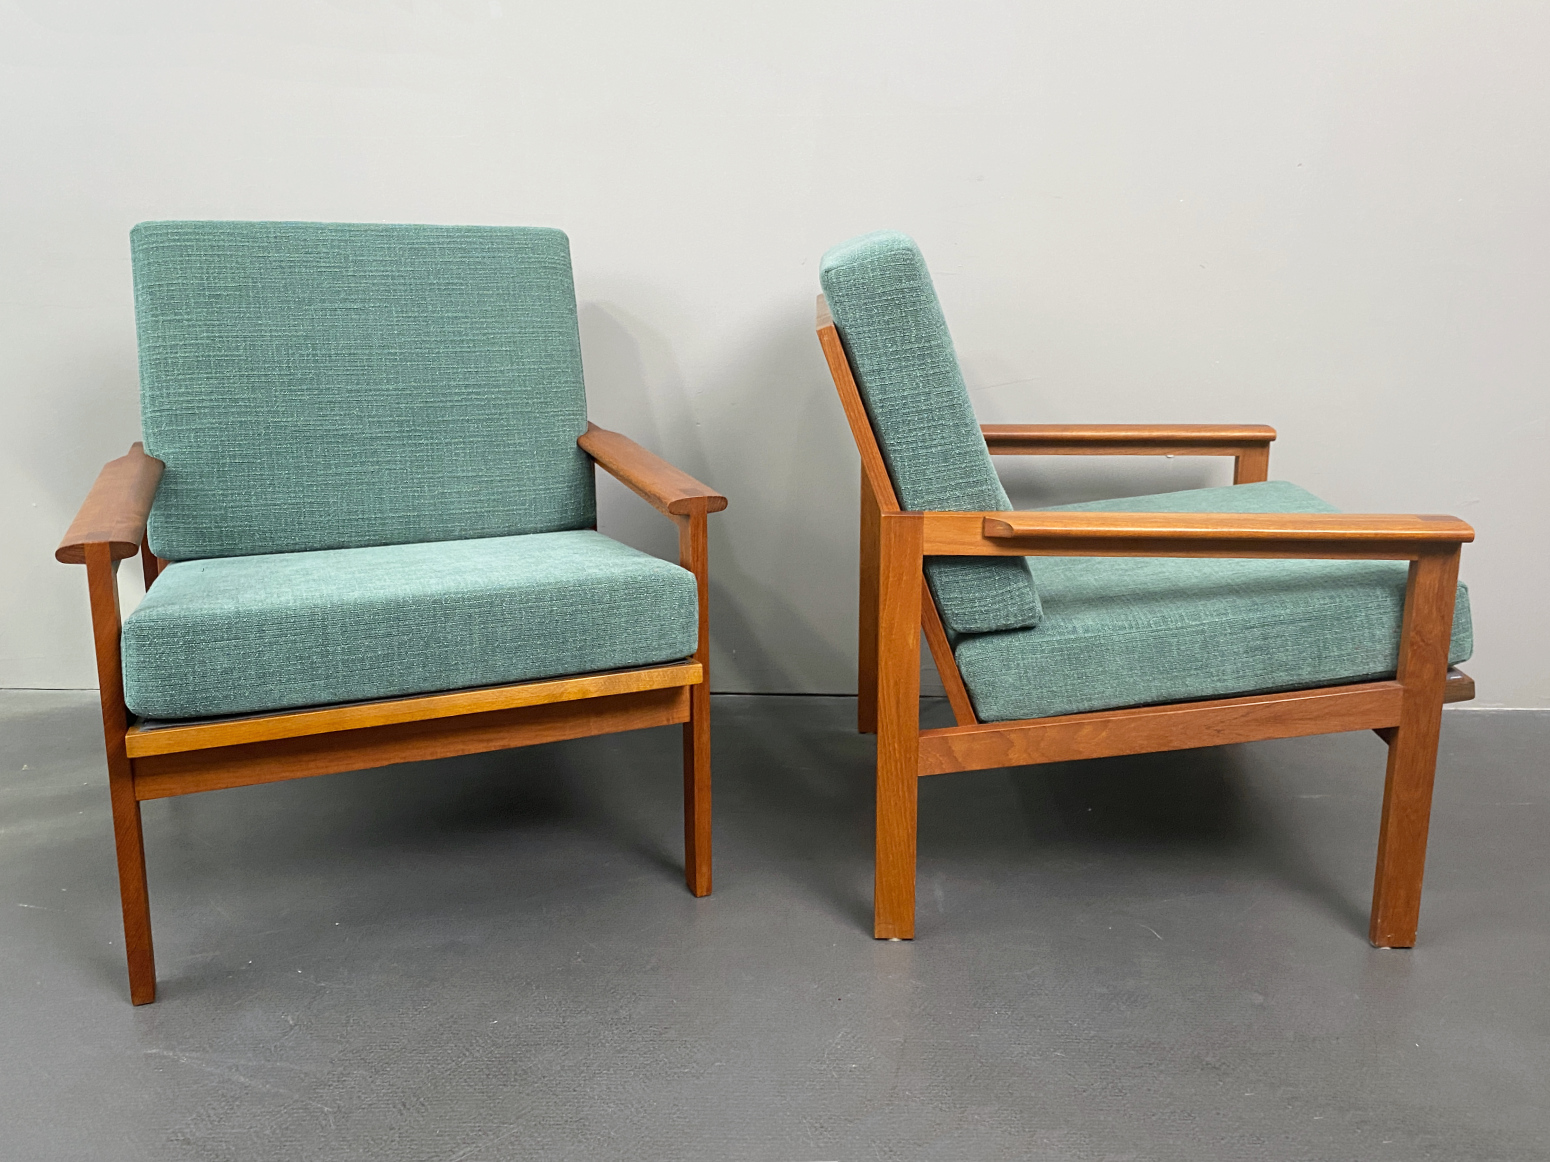 Paar Capella Teak Armlehnstühle / Sessel, von Illum Wikkelso für Niels Eilersen, Dänemark, 1950er. Interieur Design